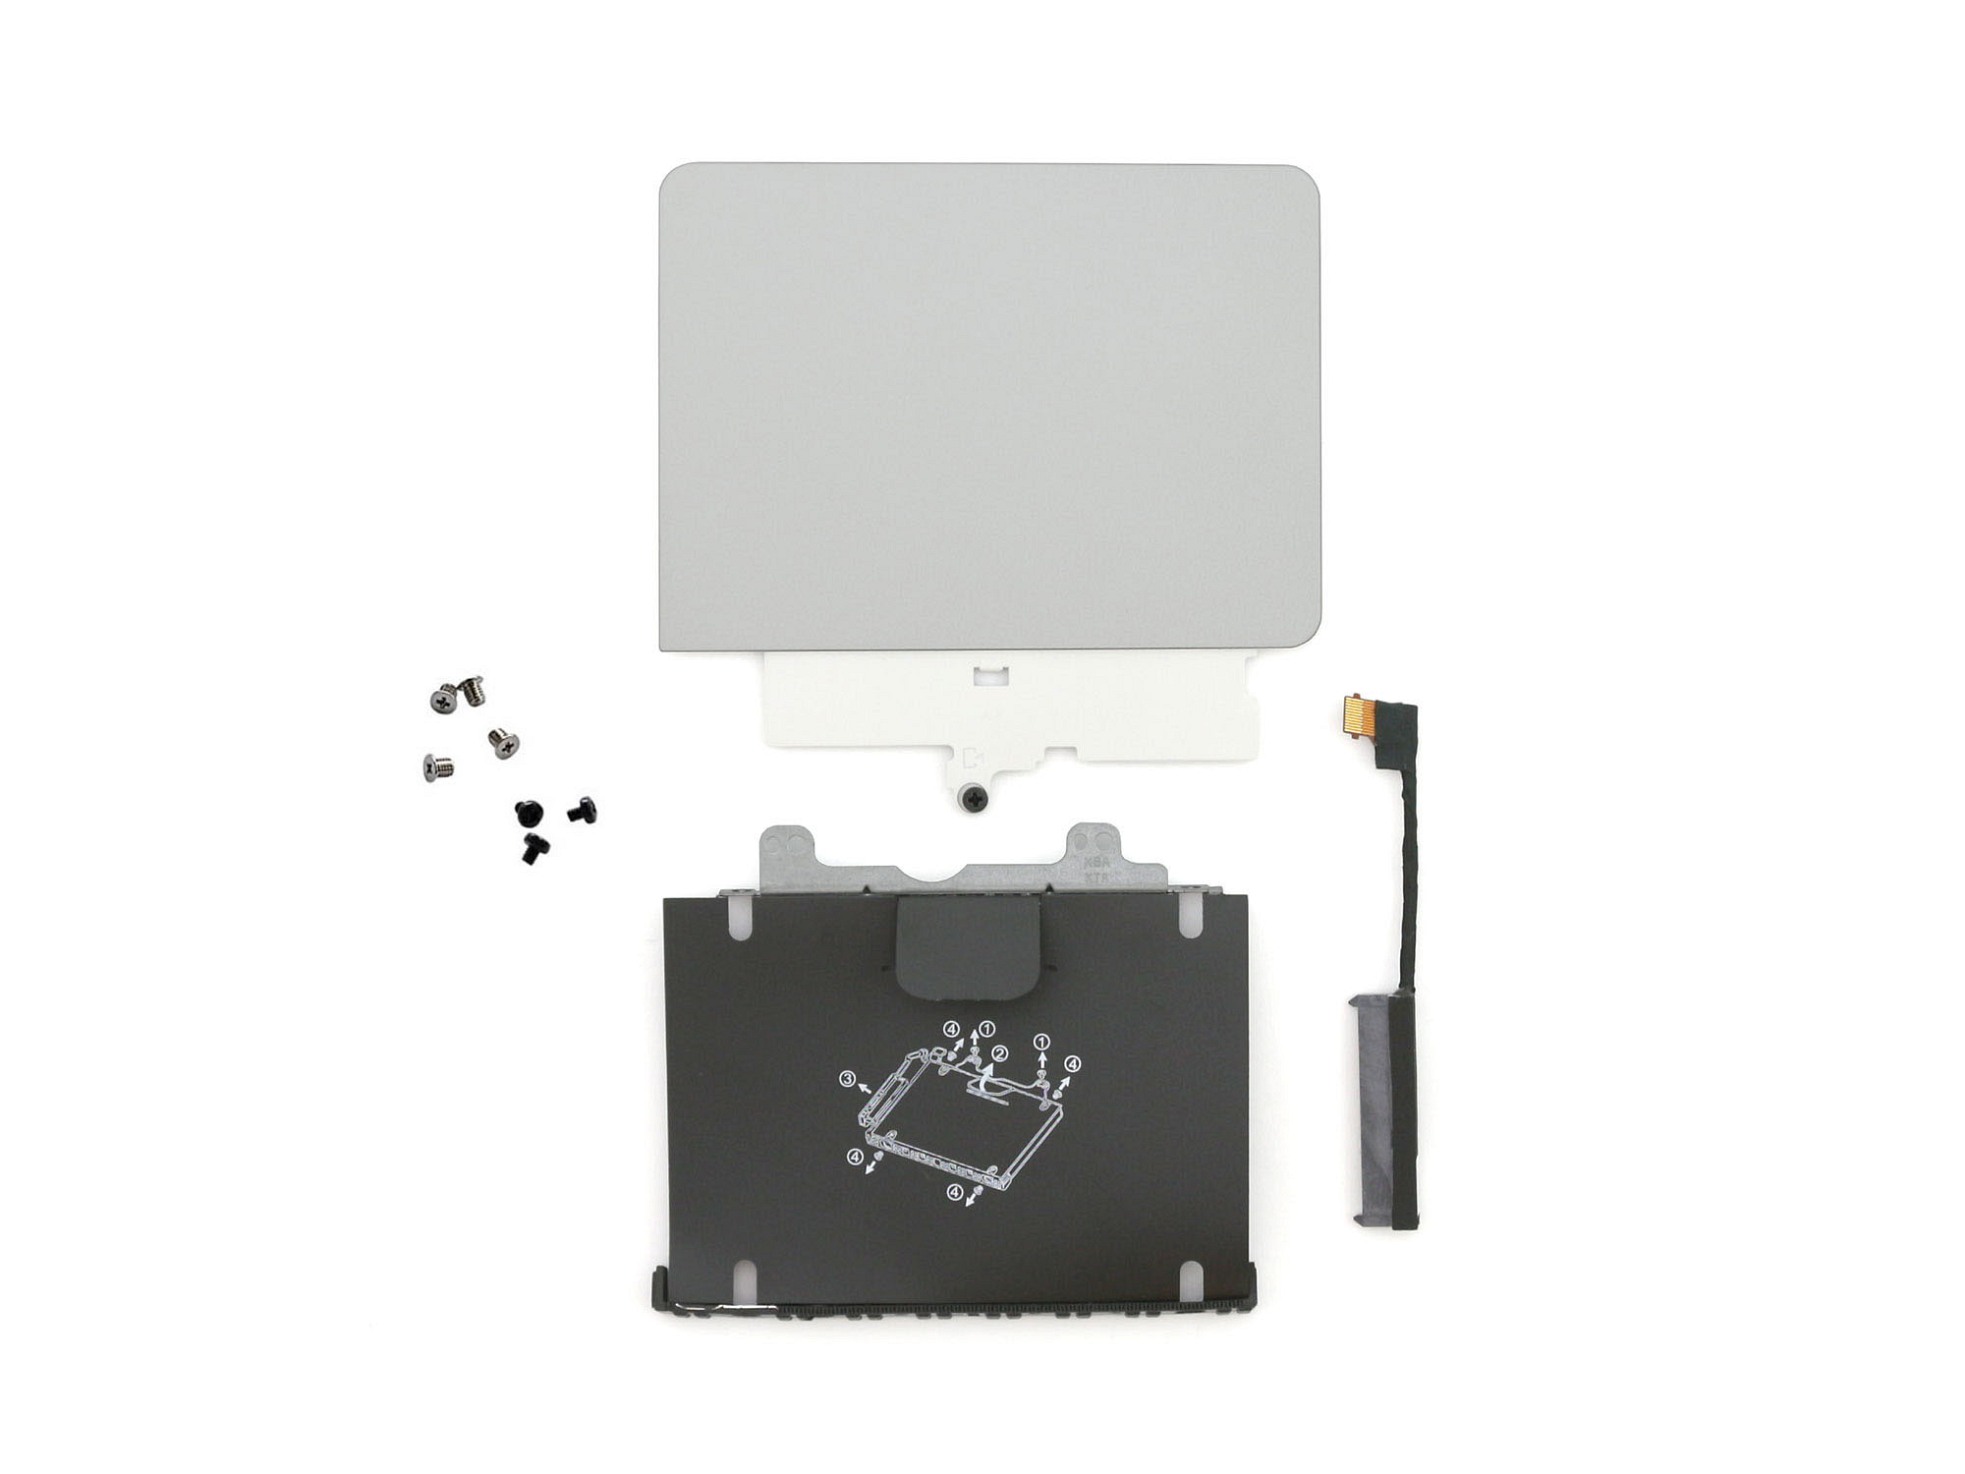 Festplatten Einbau-Kit für den 1. Festplatten Schacht Original für HP ProBook 440 G5